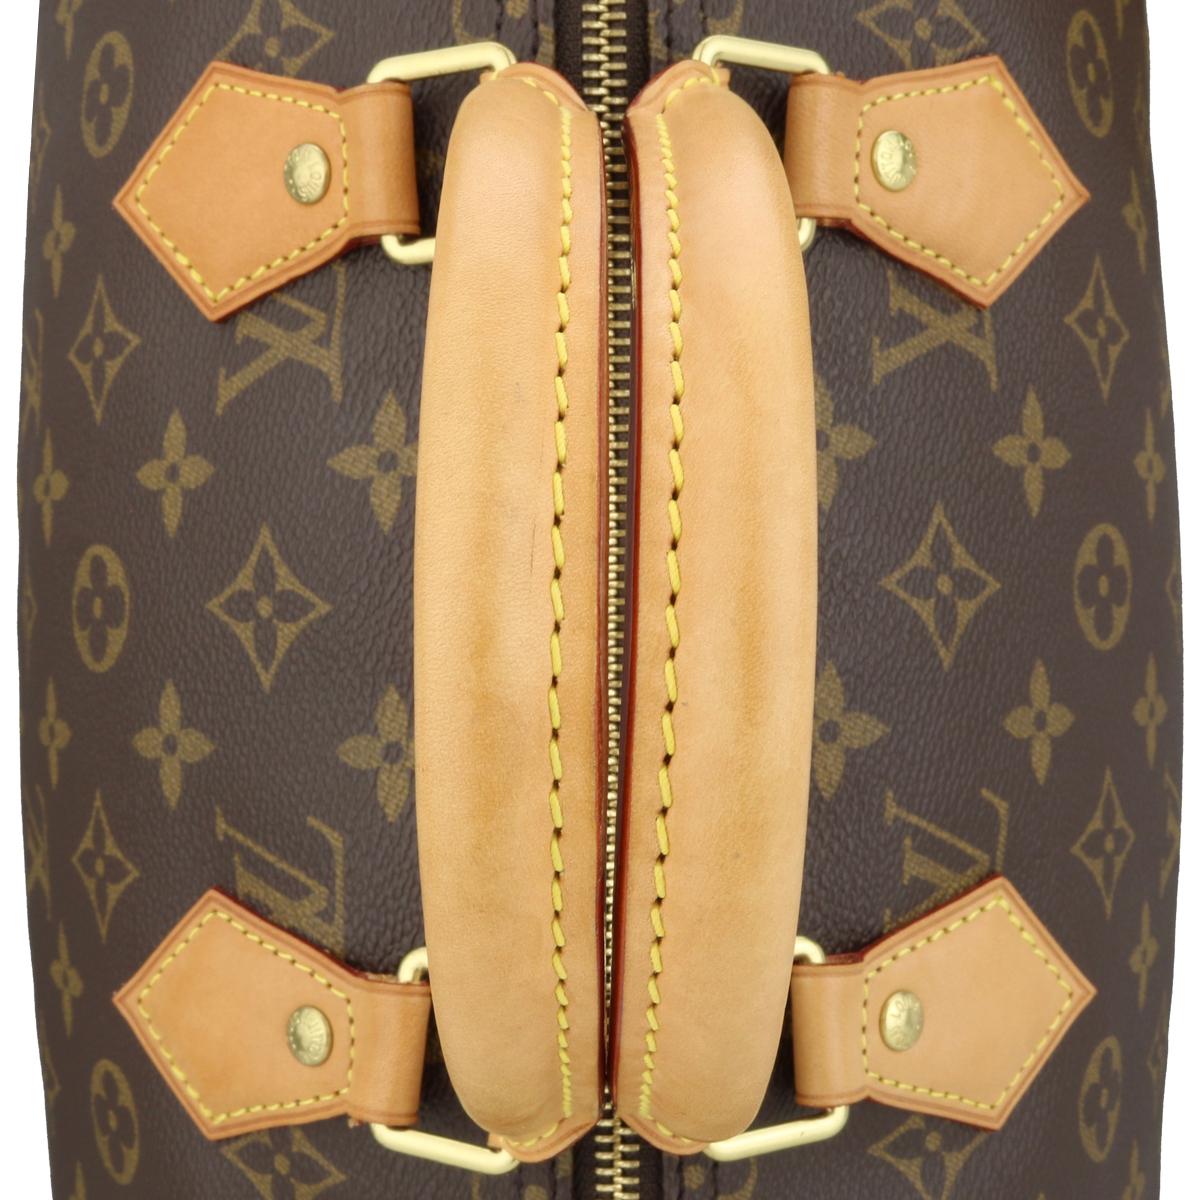 Louis Vuitton Speedy 35 Bag in Monogram 2018 8